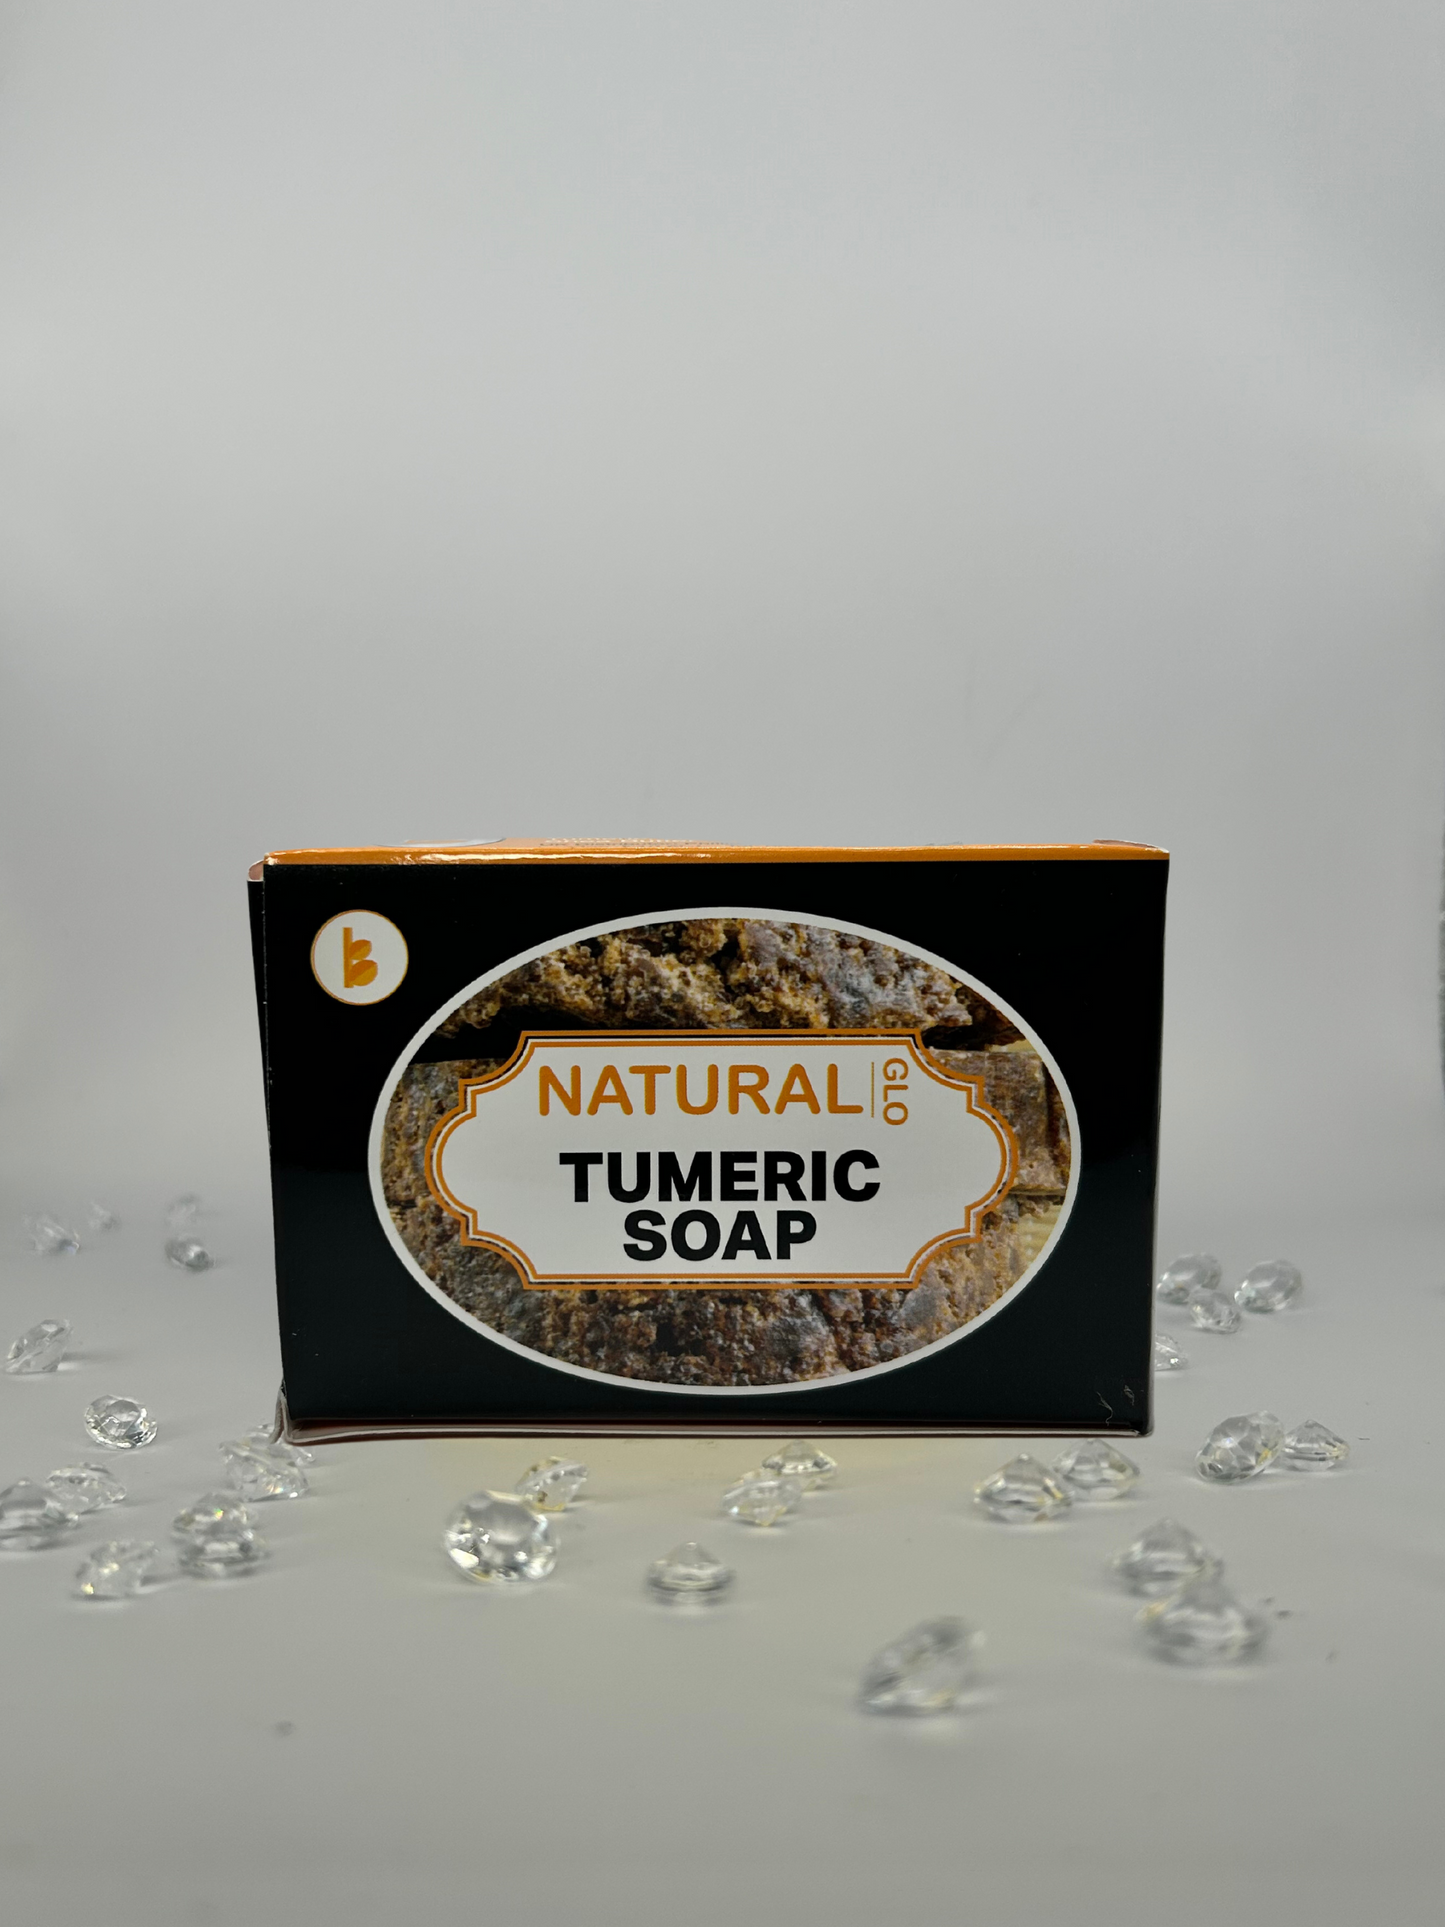 Ghana Tumeric Soap